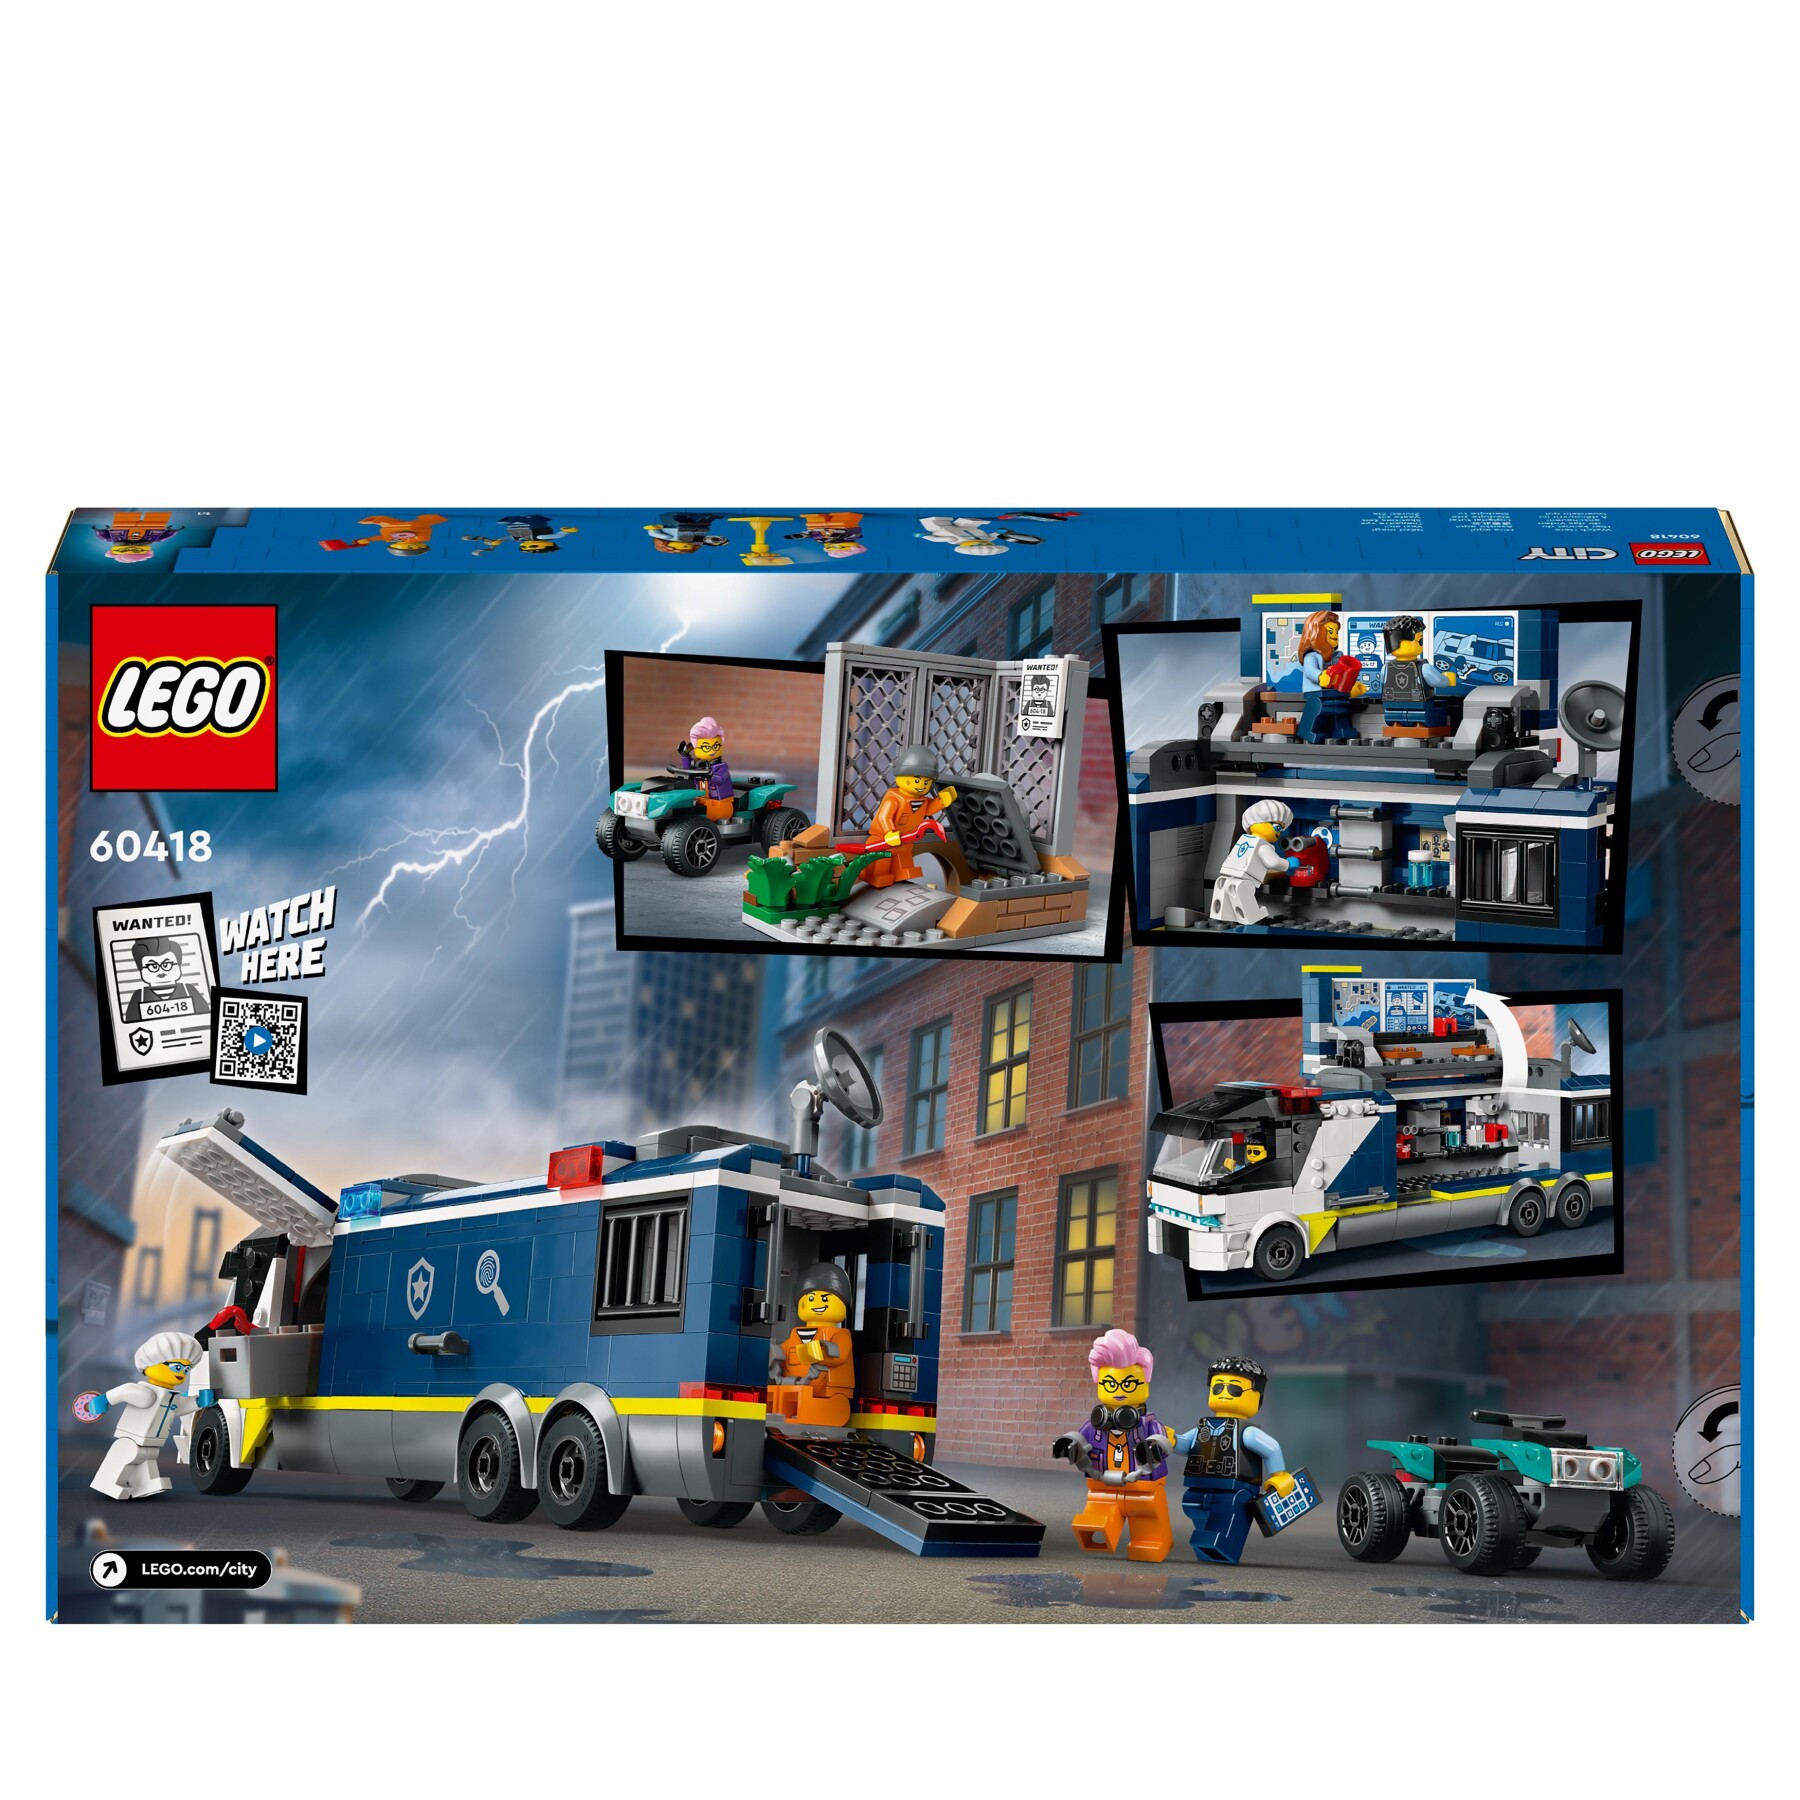 Lego city 60418 camion laboratorio mobile della polizia, giocattolo per bambini di 7+ anni con quad bike e 5 minifigure - LEGO CITY